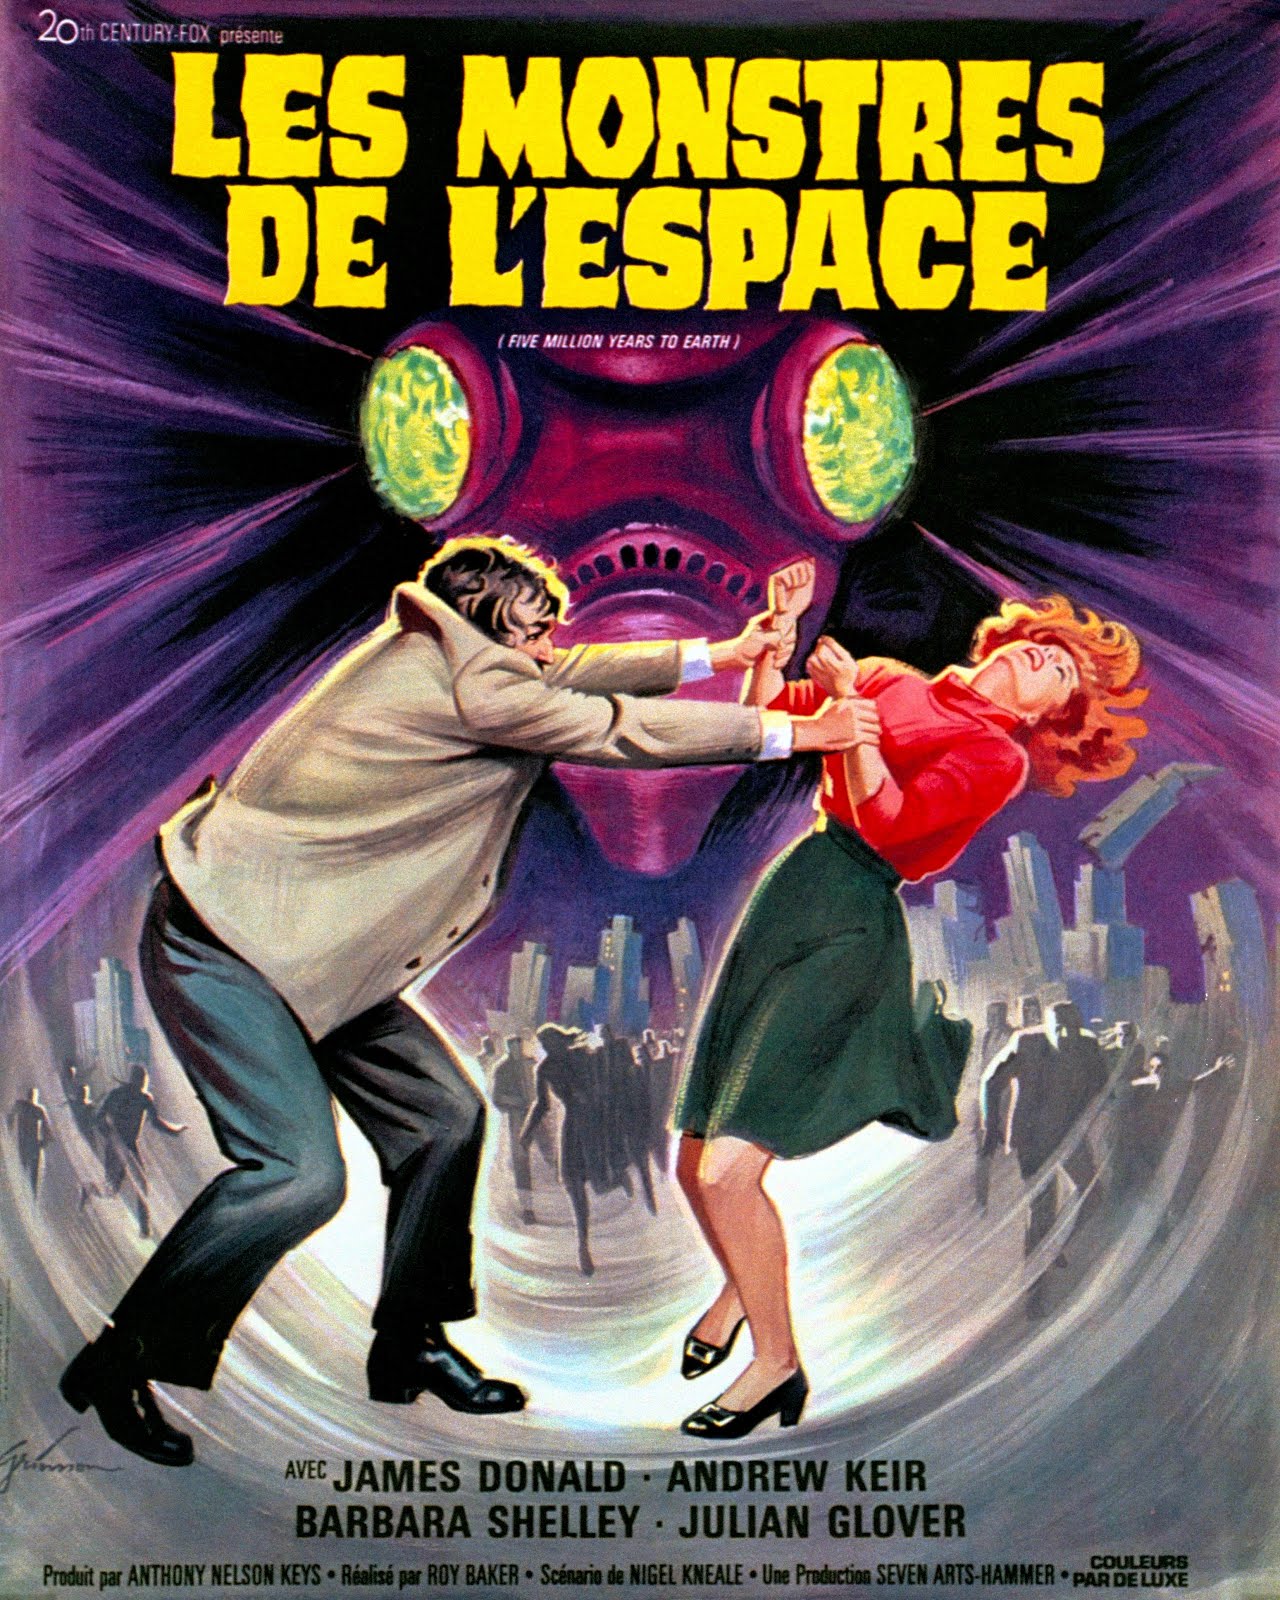 Les monstres de l'espace (1967) Roy Ward Baker - Quatermass and the pit (27.02.1967 / 25.04.1967)